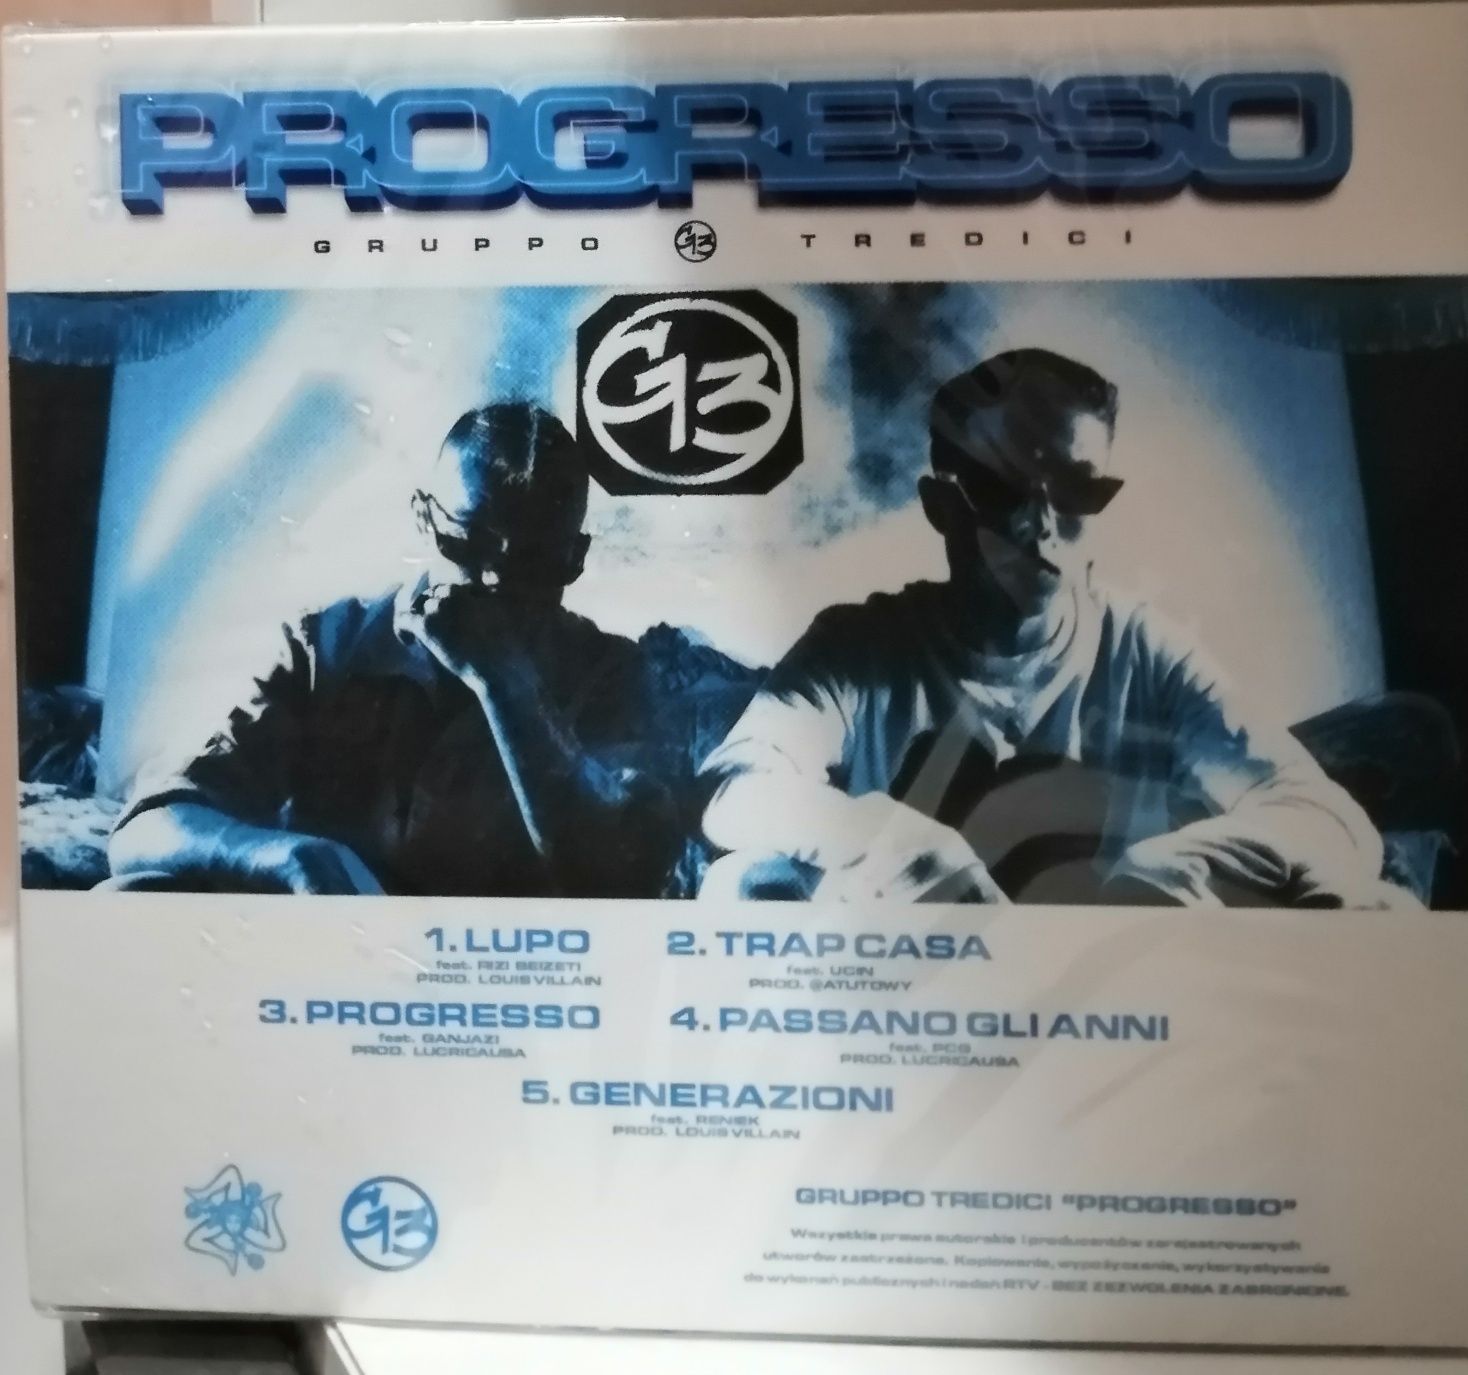 Gruppo Tredici - Progresso CD unikat nowa folia 1wyd